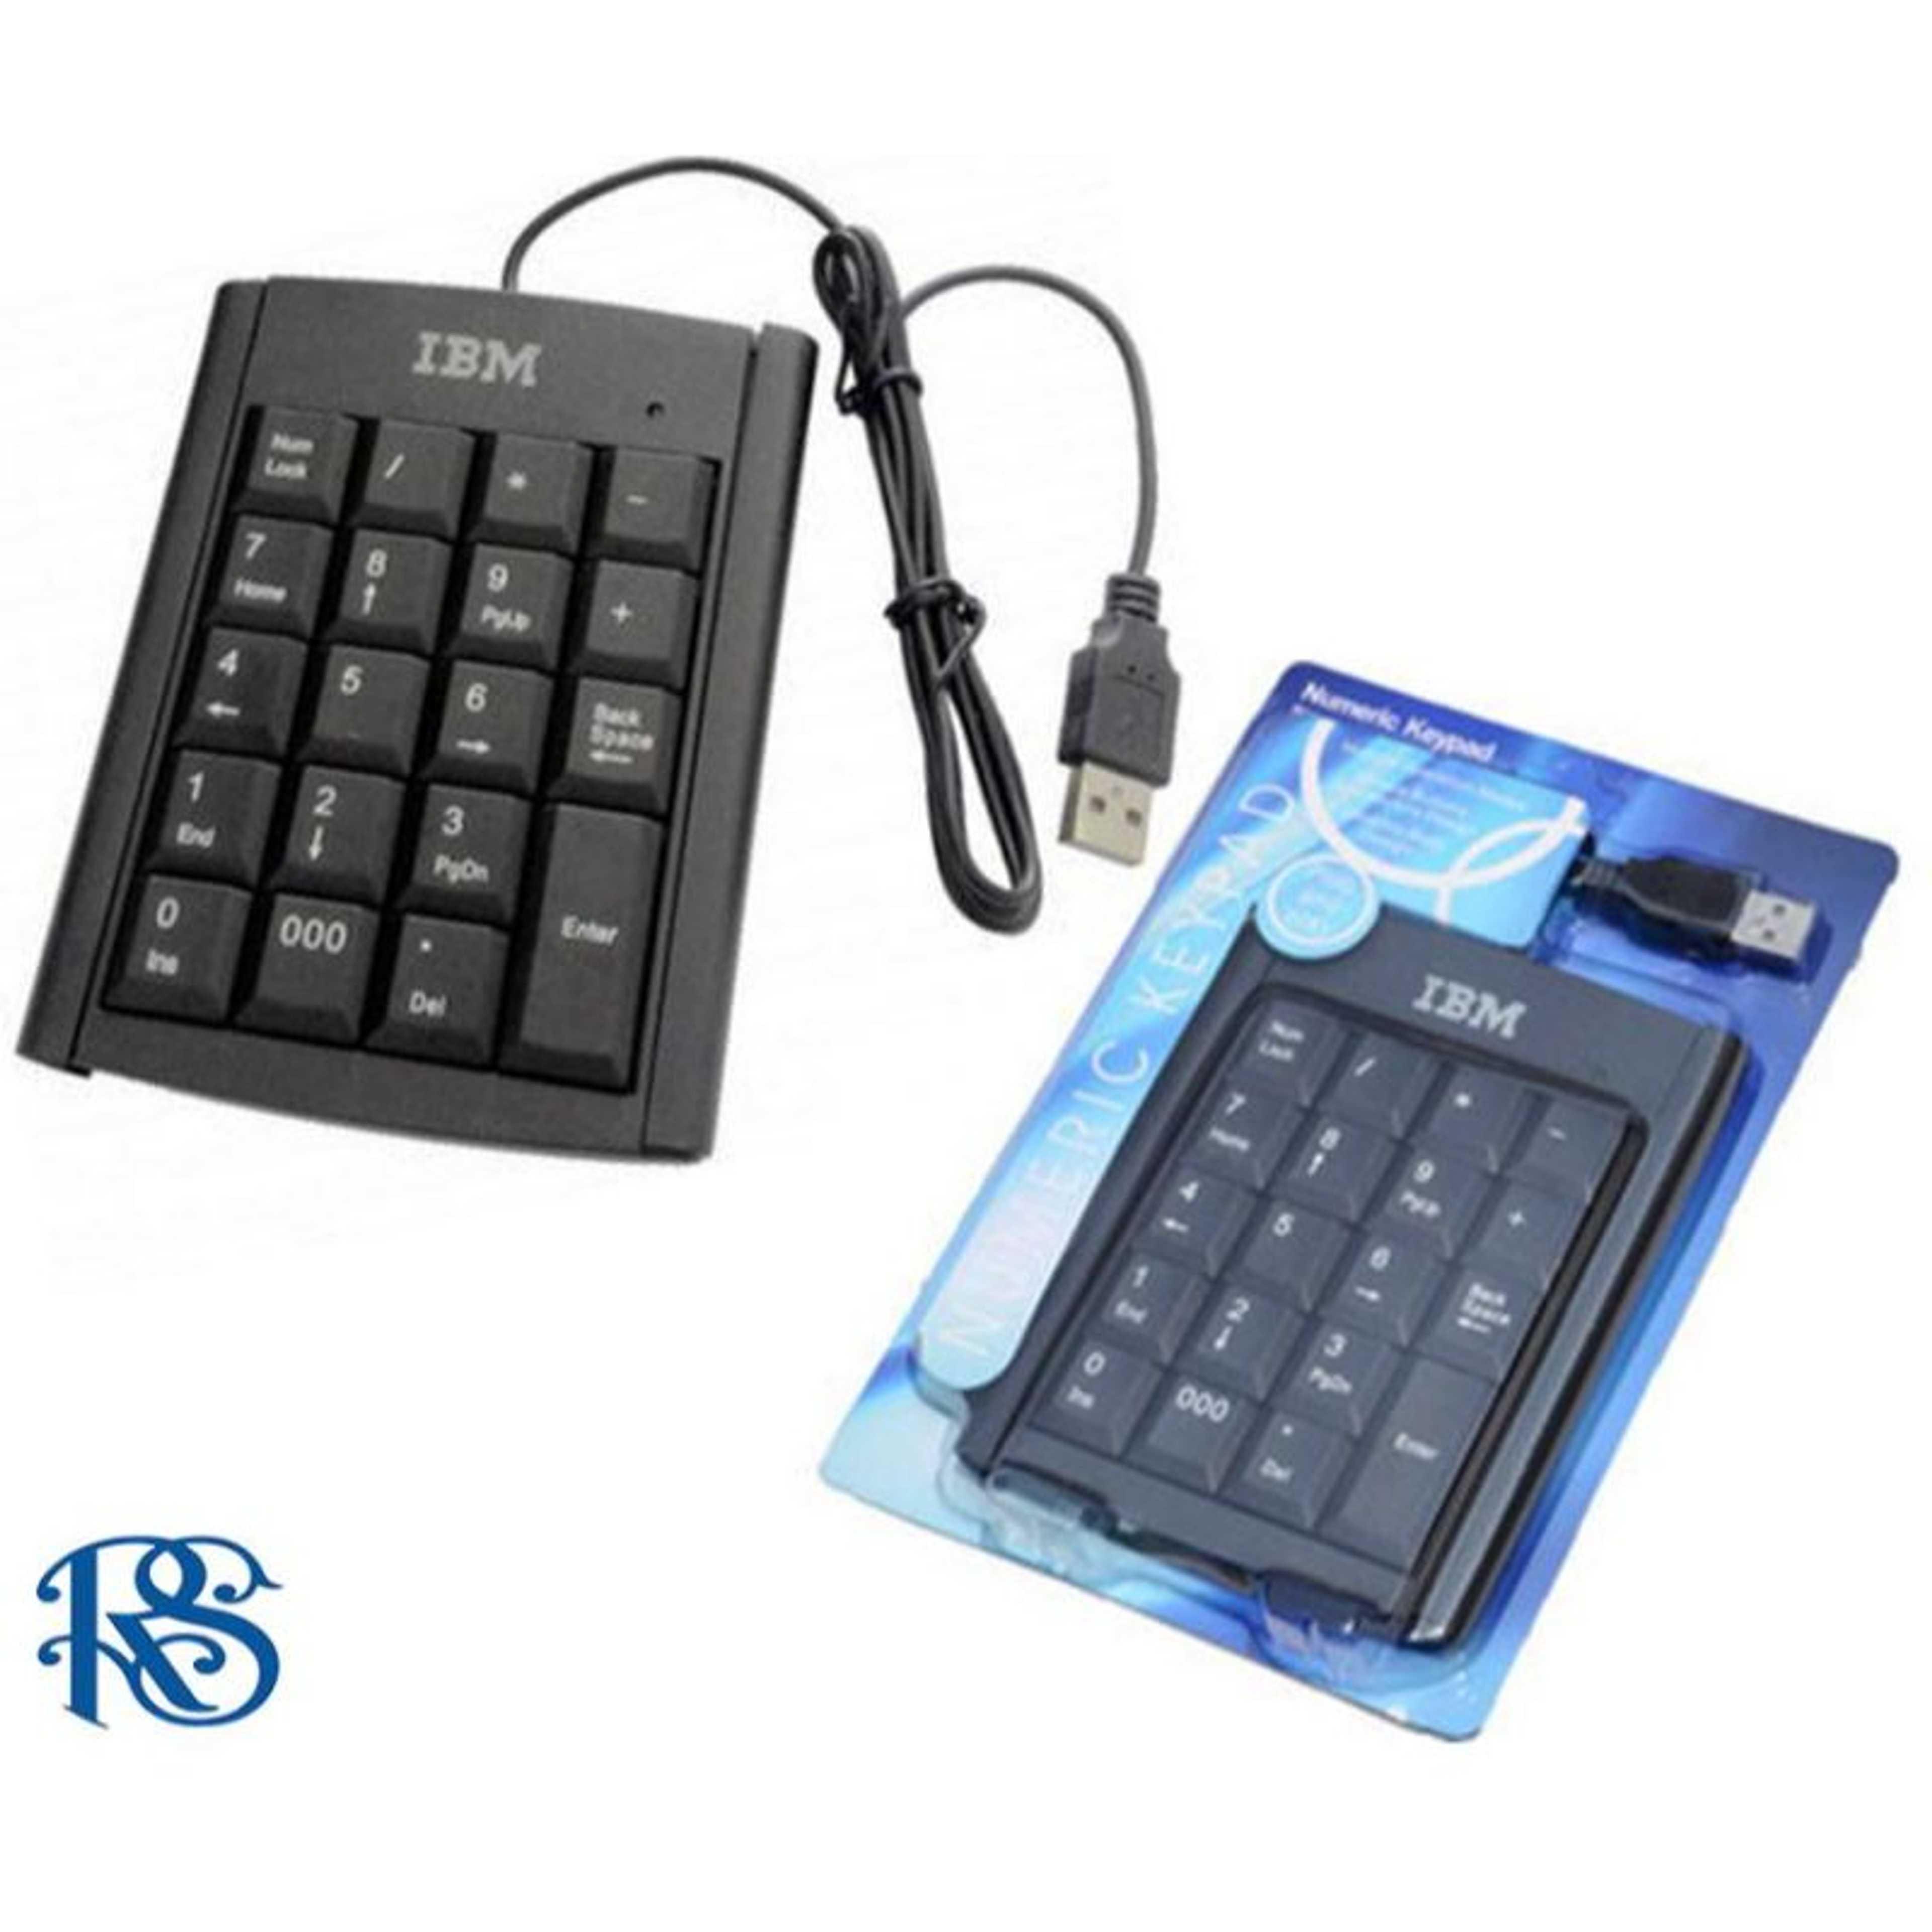 IBM Mini Numeric KeyPad Number Keyboard